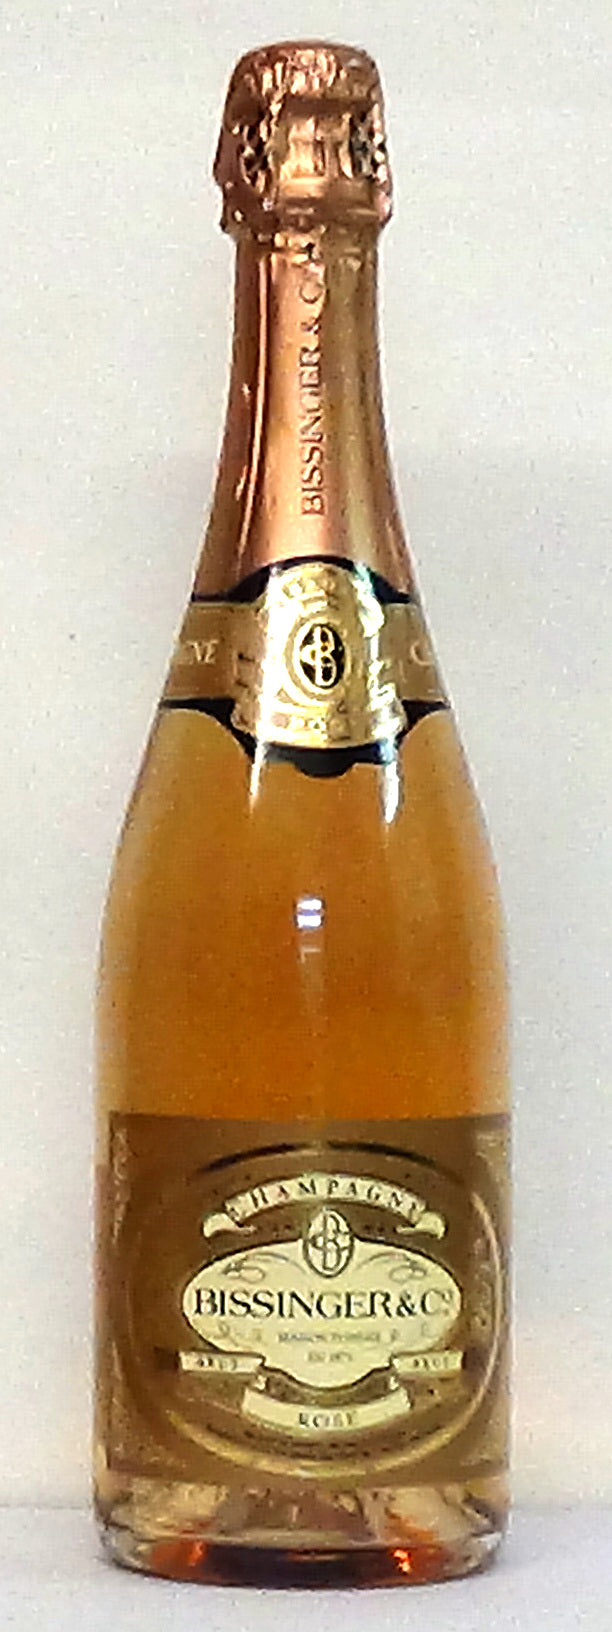 NV Bissinger & Co. Brut Champagne Rose